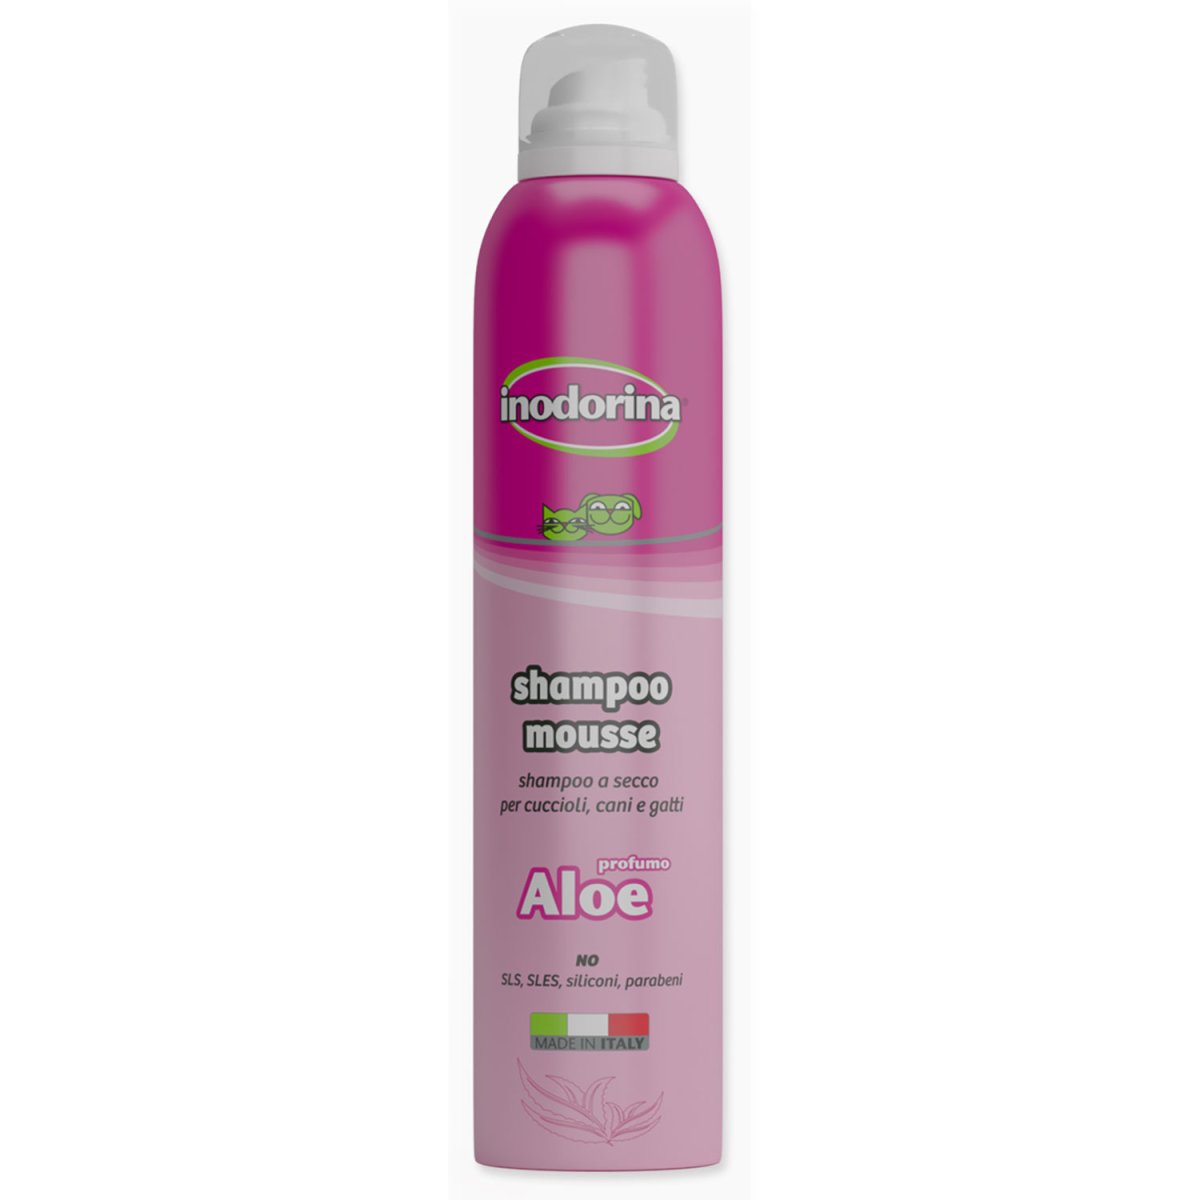 Šampon INODORINA suchá pěna Aloe Vera - 300 ml